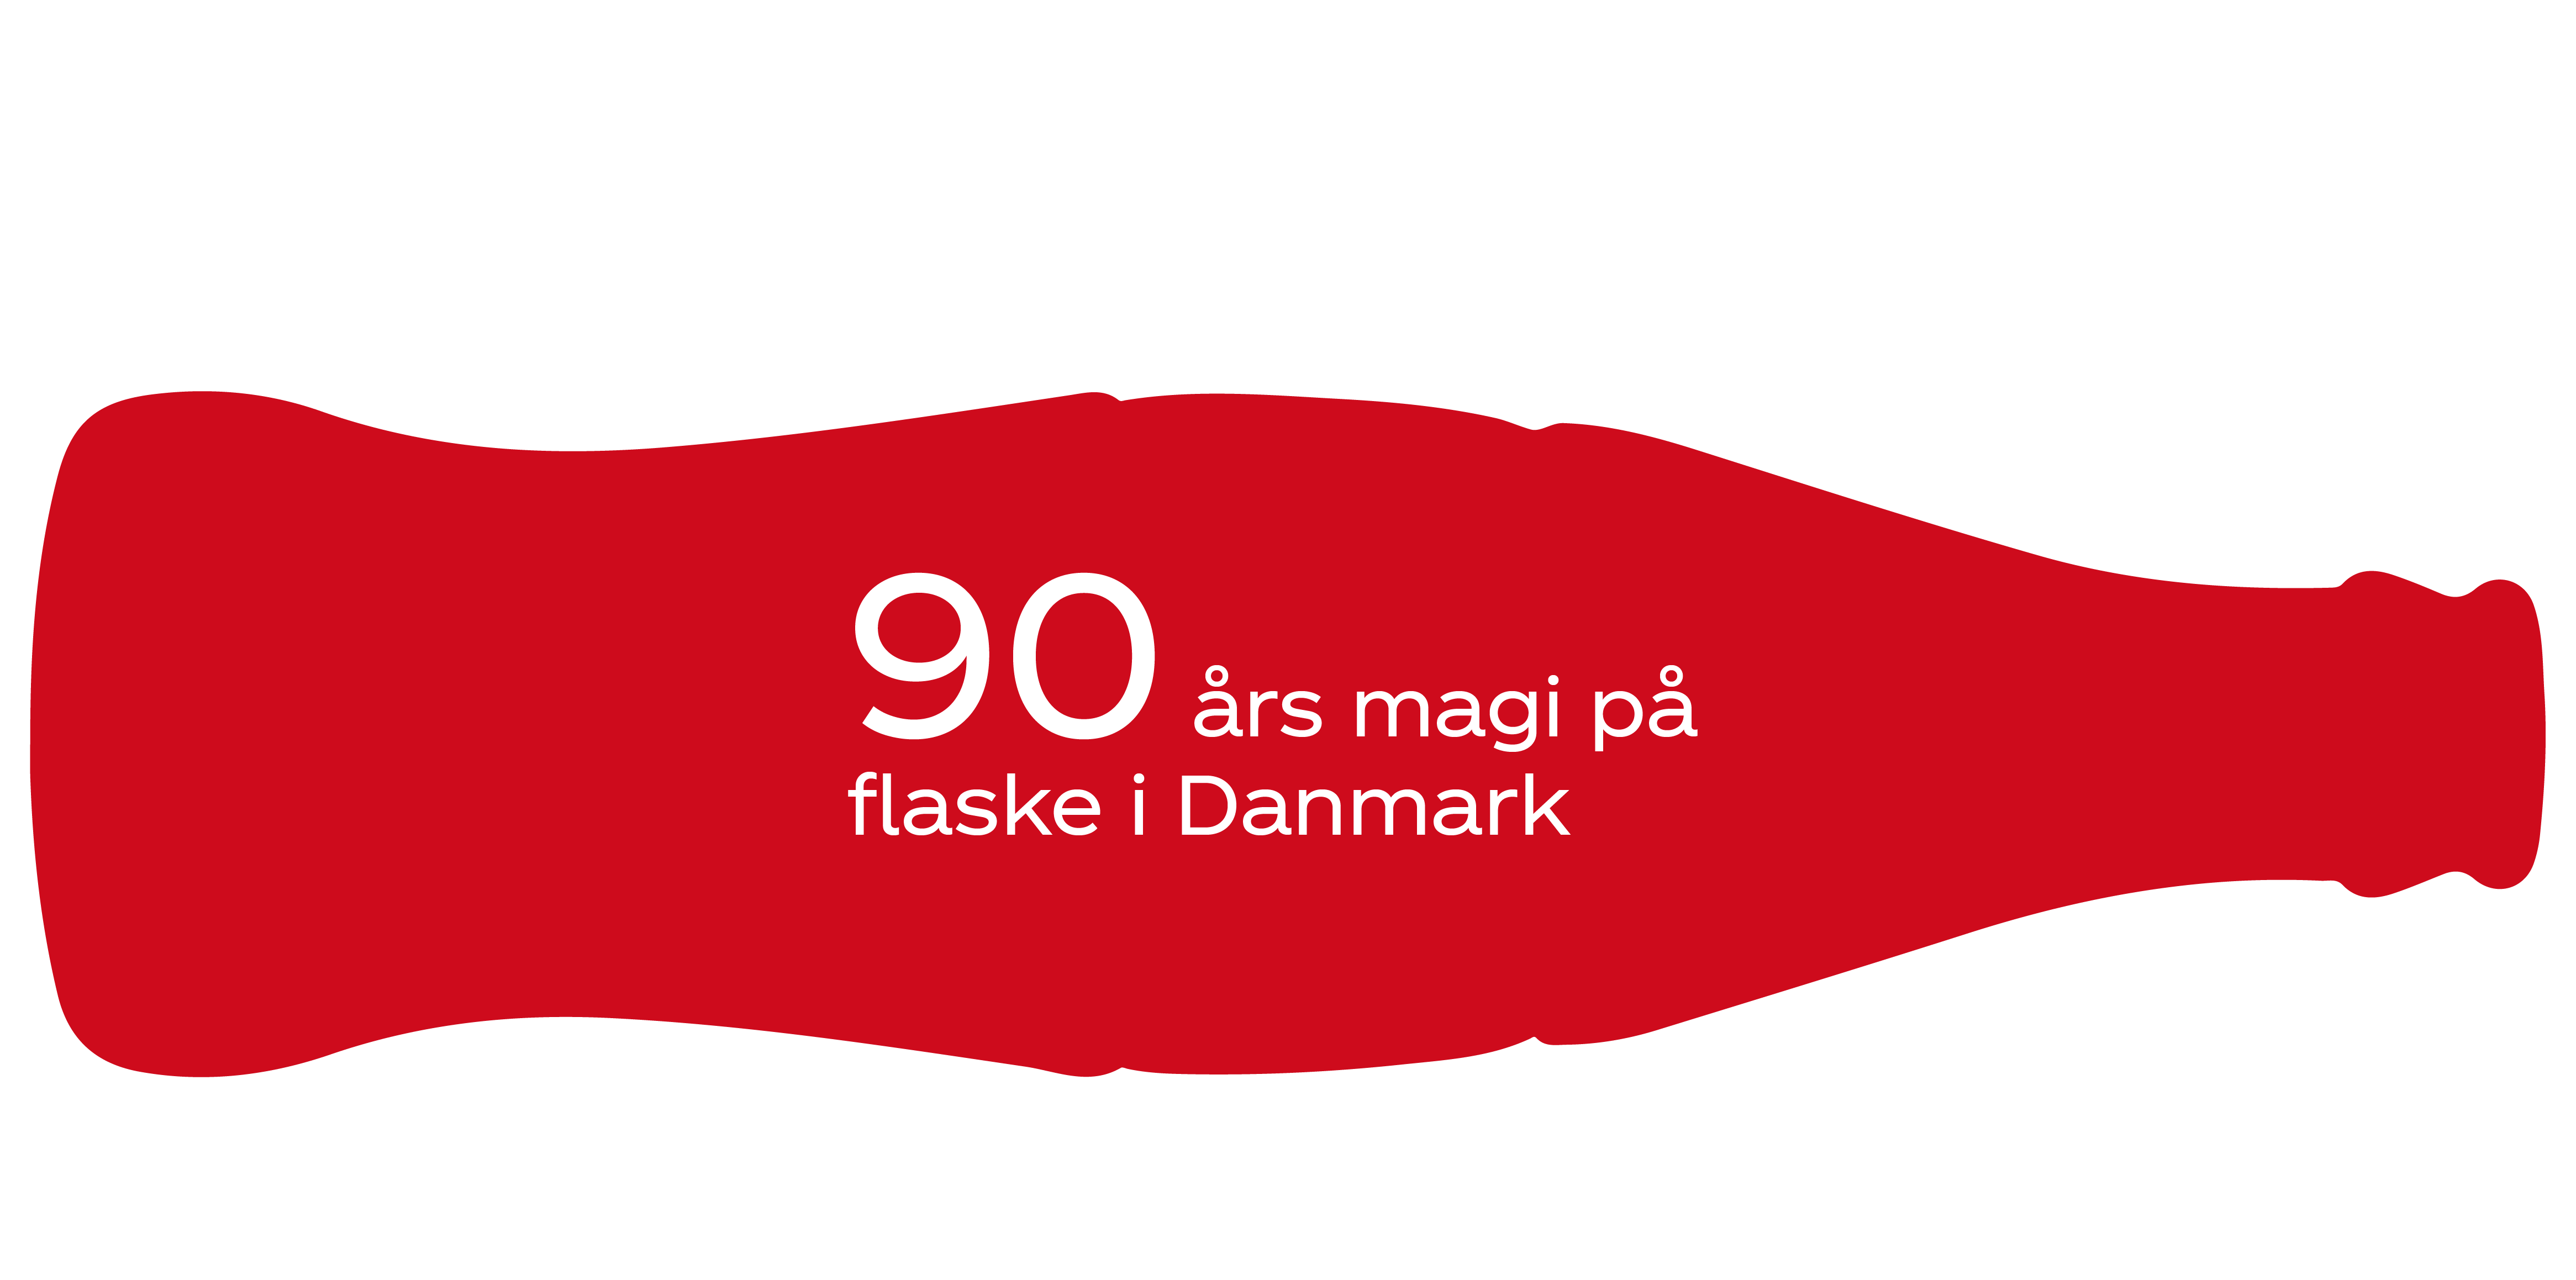 90 års magi på flaske i Danmark